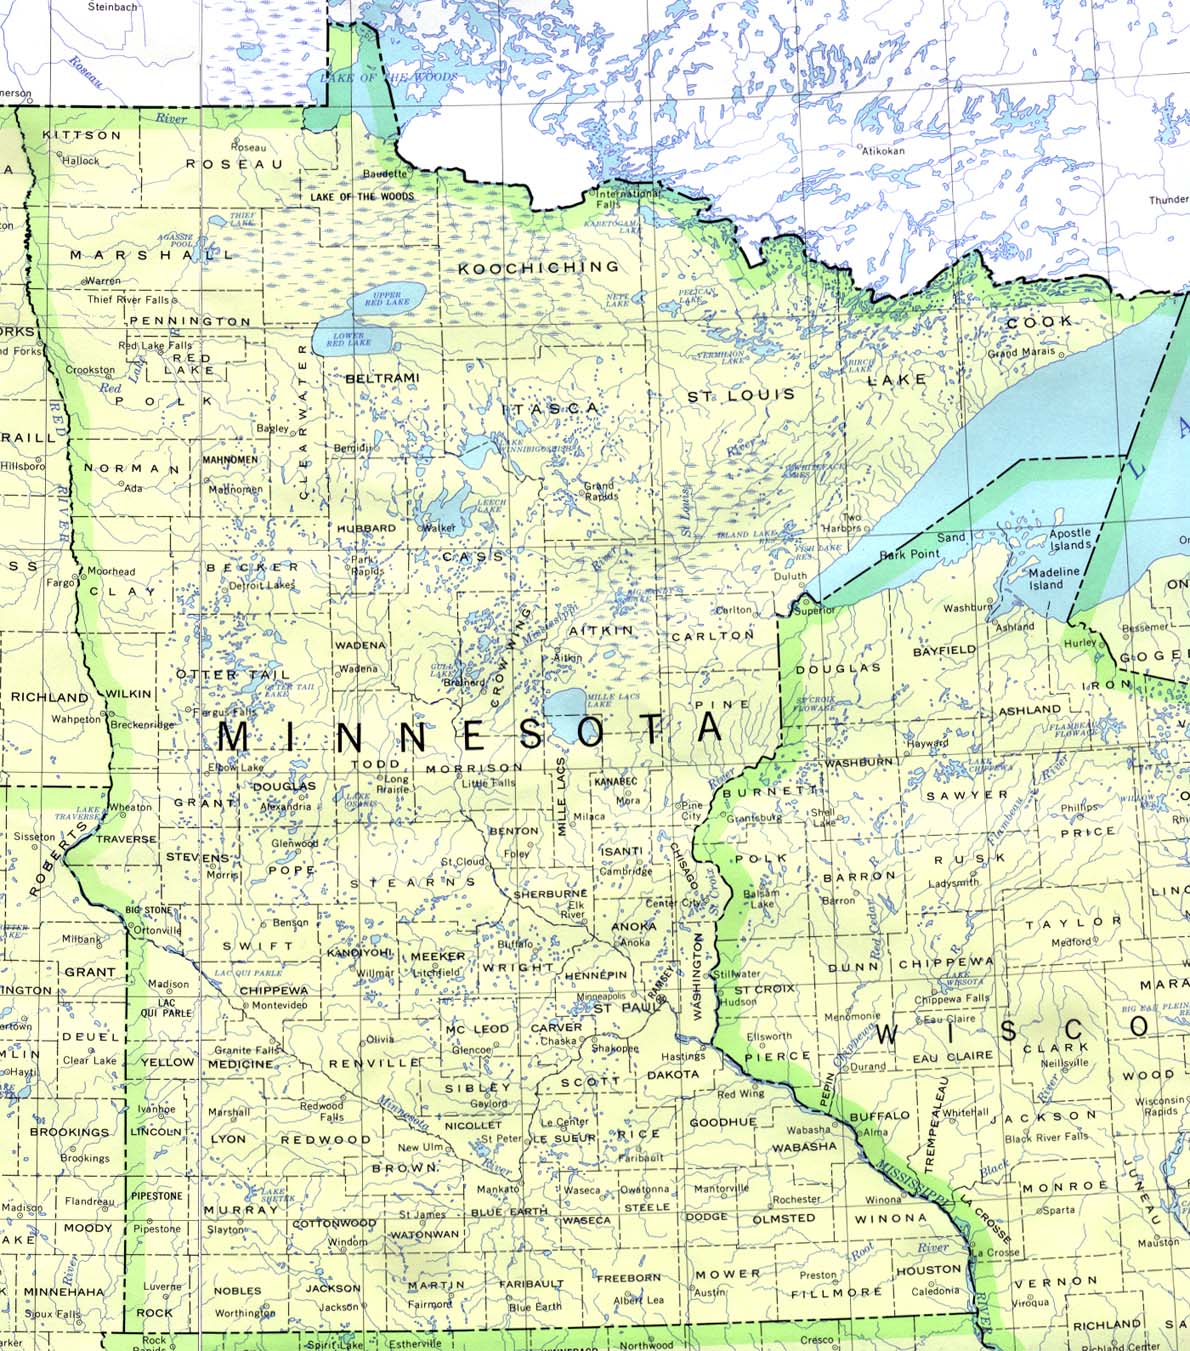 Mapa del Estado de Minnesota, Estados Unidos